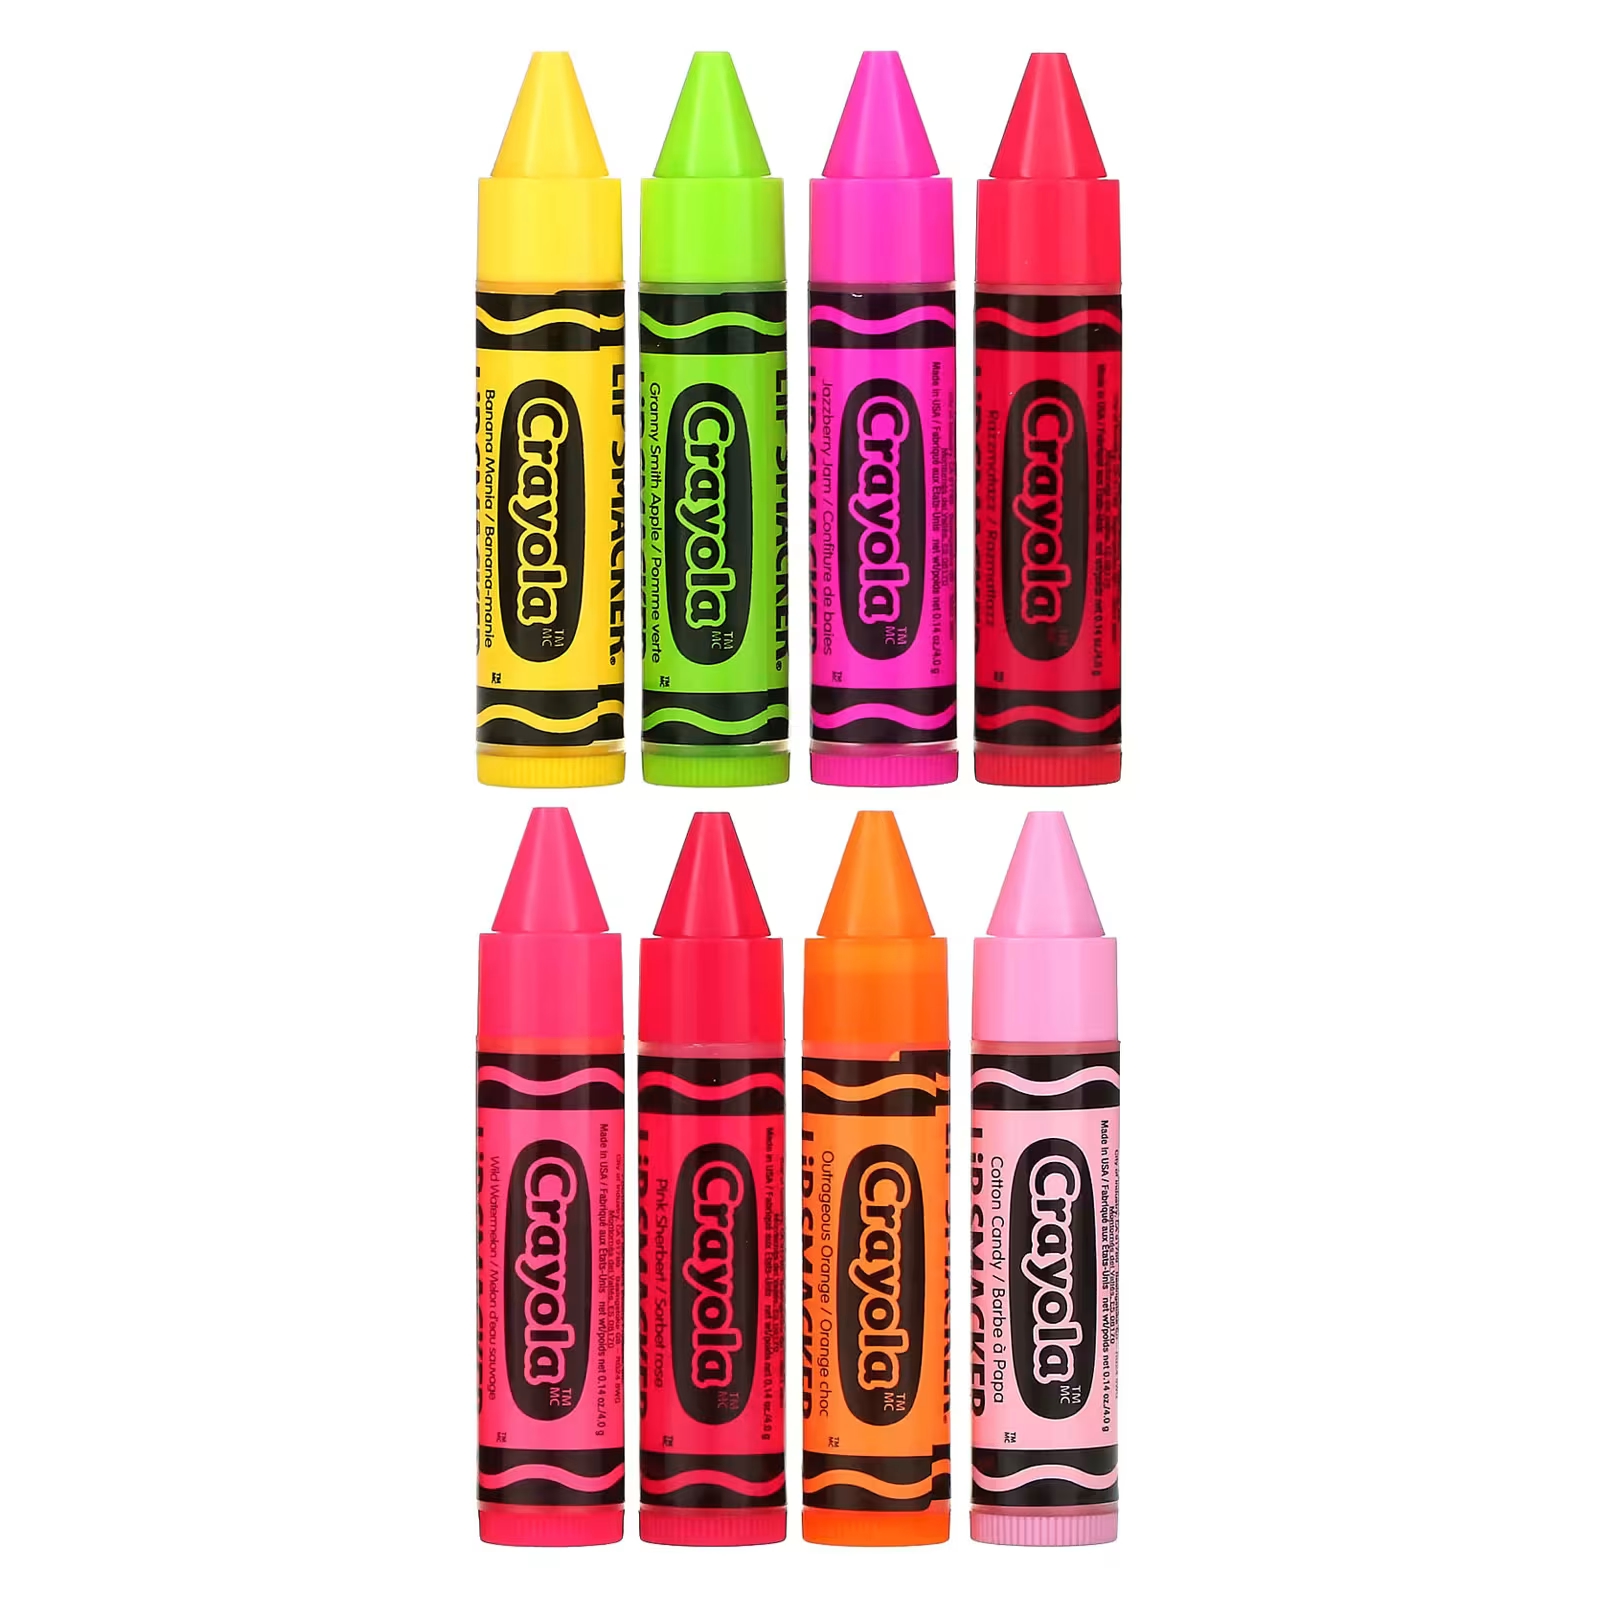 Lip Smacker Crayola Бальзам для губ «Вечеринка», 8 штук по 0,14 унции (4 г) каждая ccmt120404 em ybg202 ccmt120408 em ybg202 ccmt120404 em ybg205 ccmt120408 em ybg205 ccmt431 ccmt432 zcc ct карбидные вставки с чпу